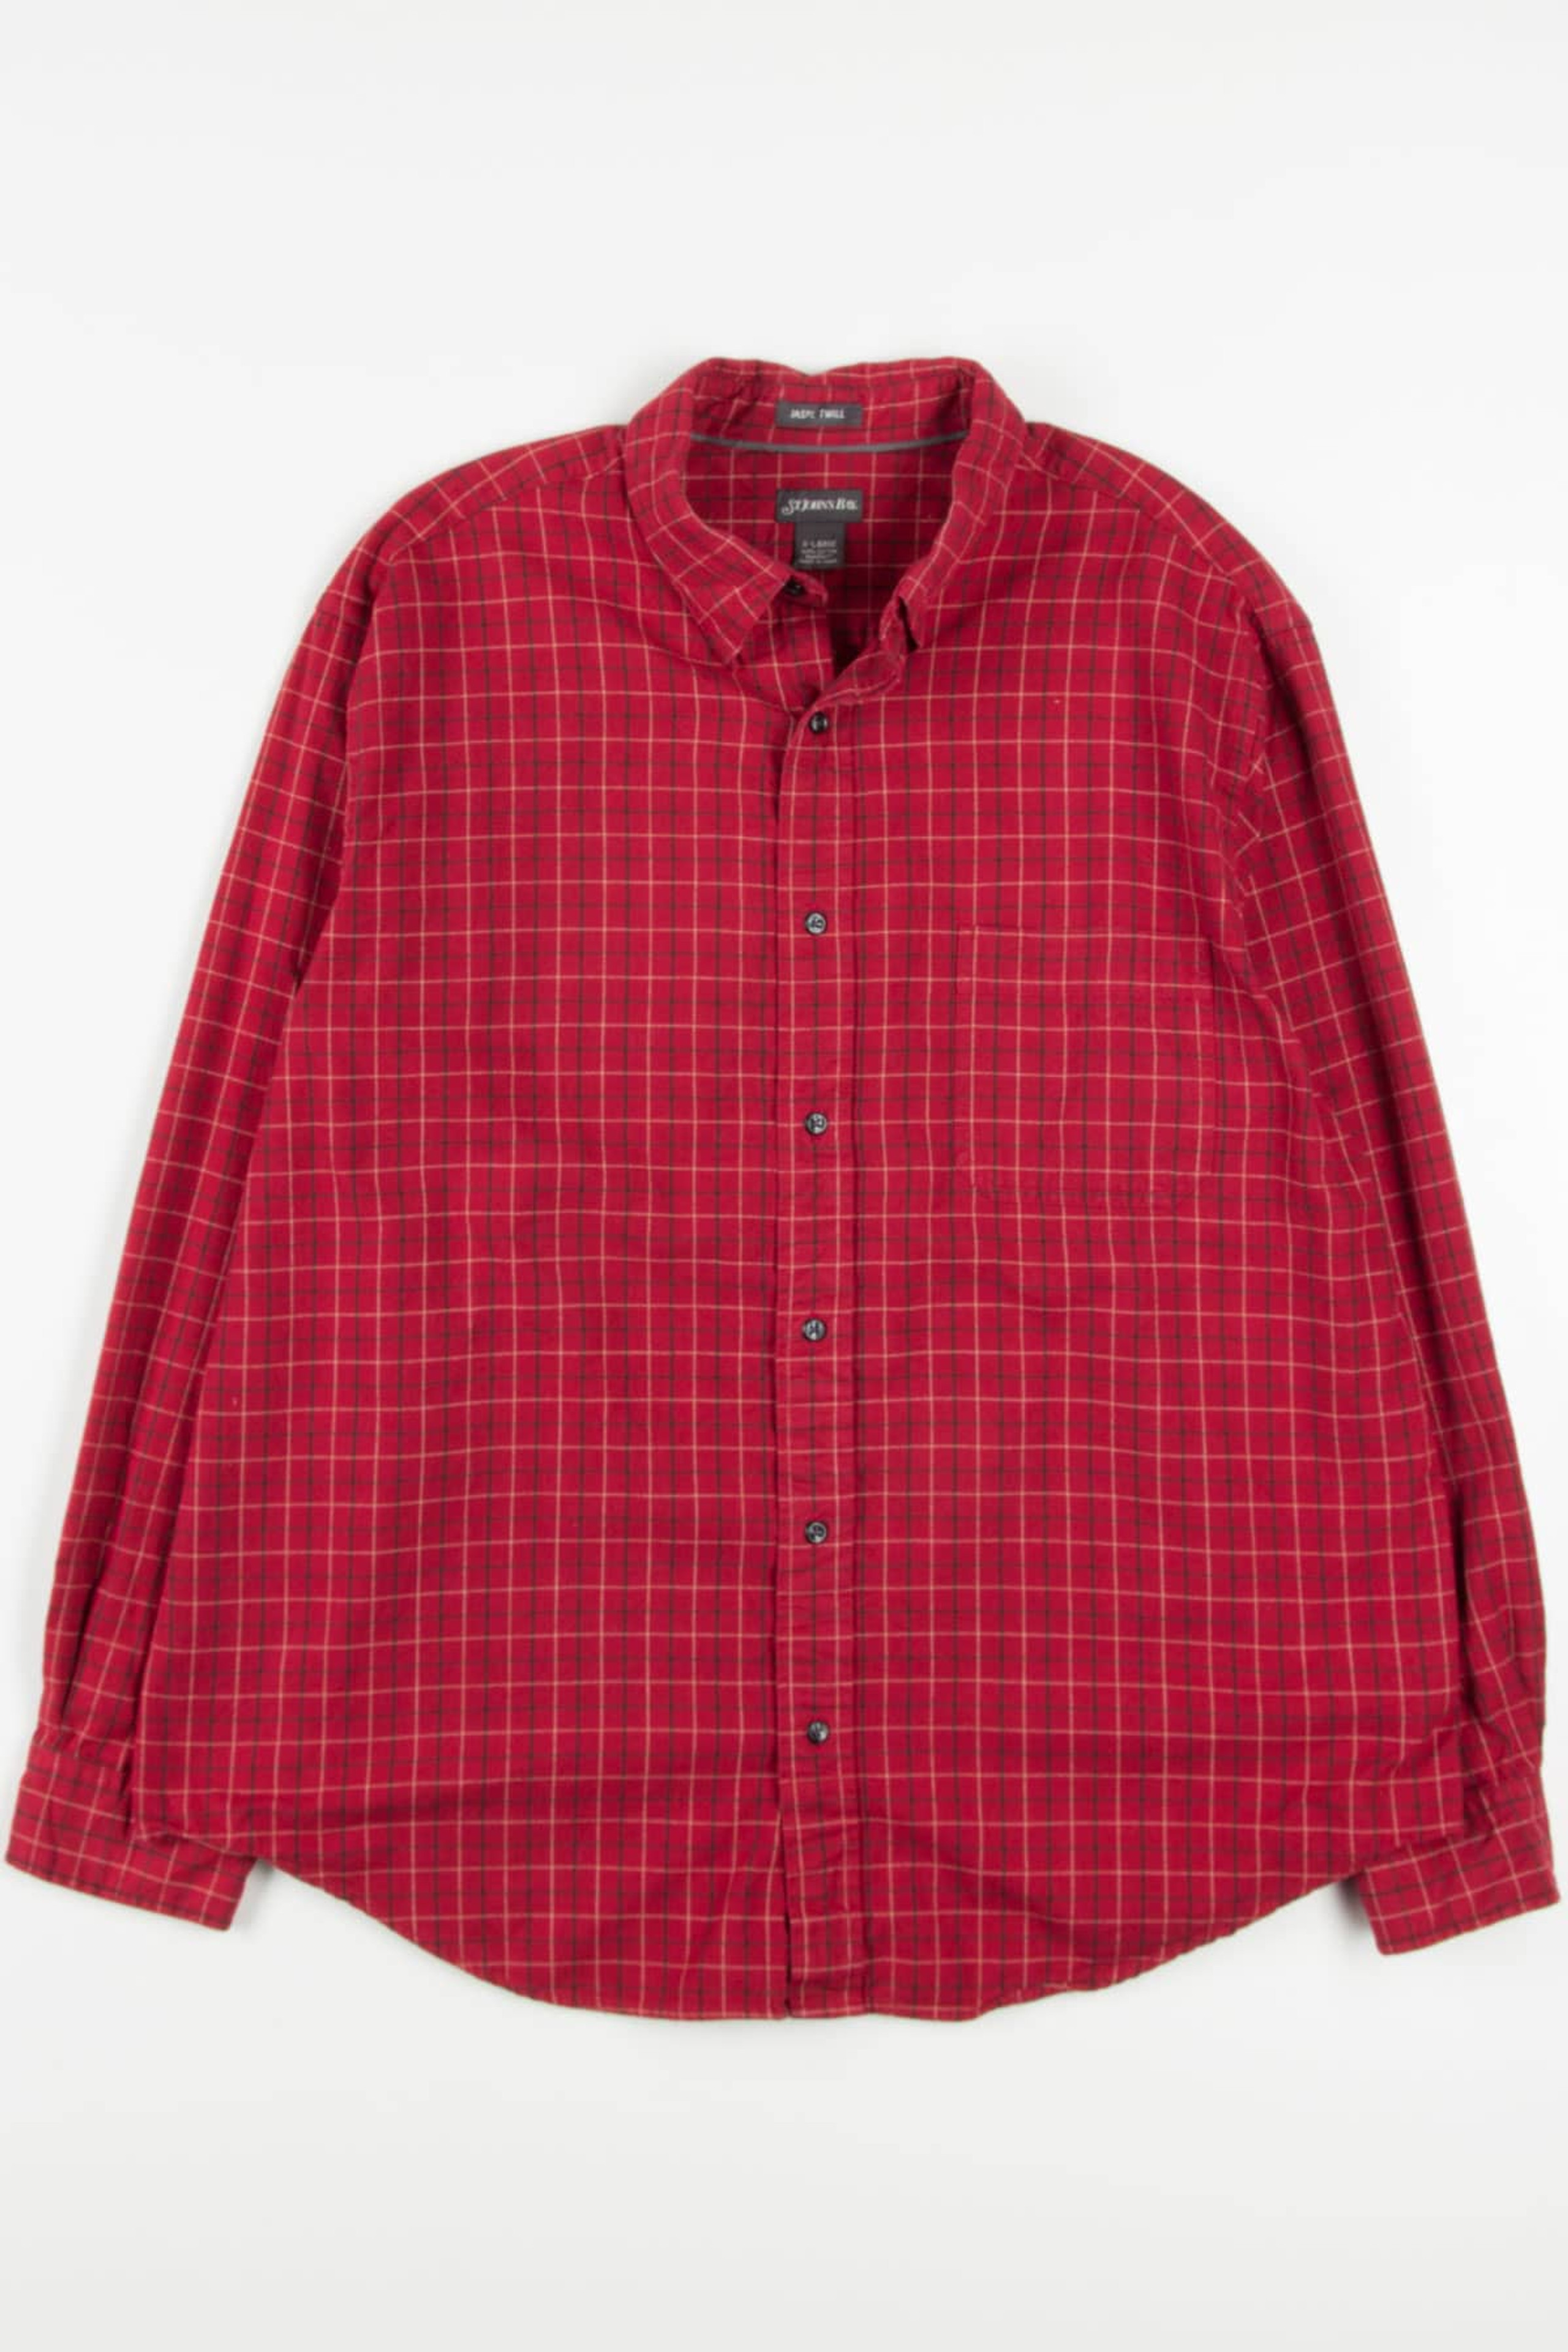 Red St. John's Bay Flannel Shirt (2000s) - Ragstock.com